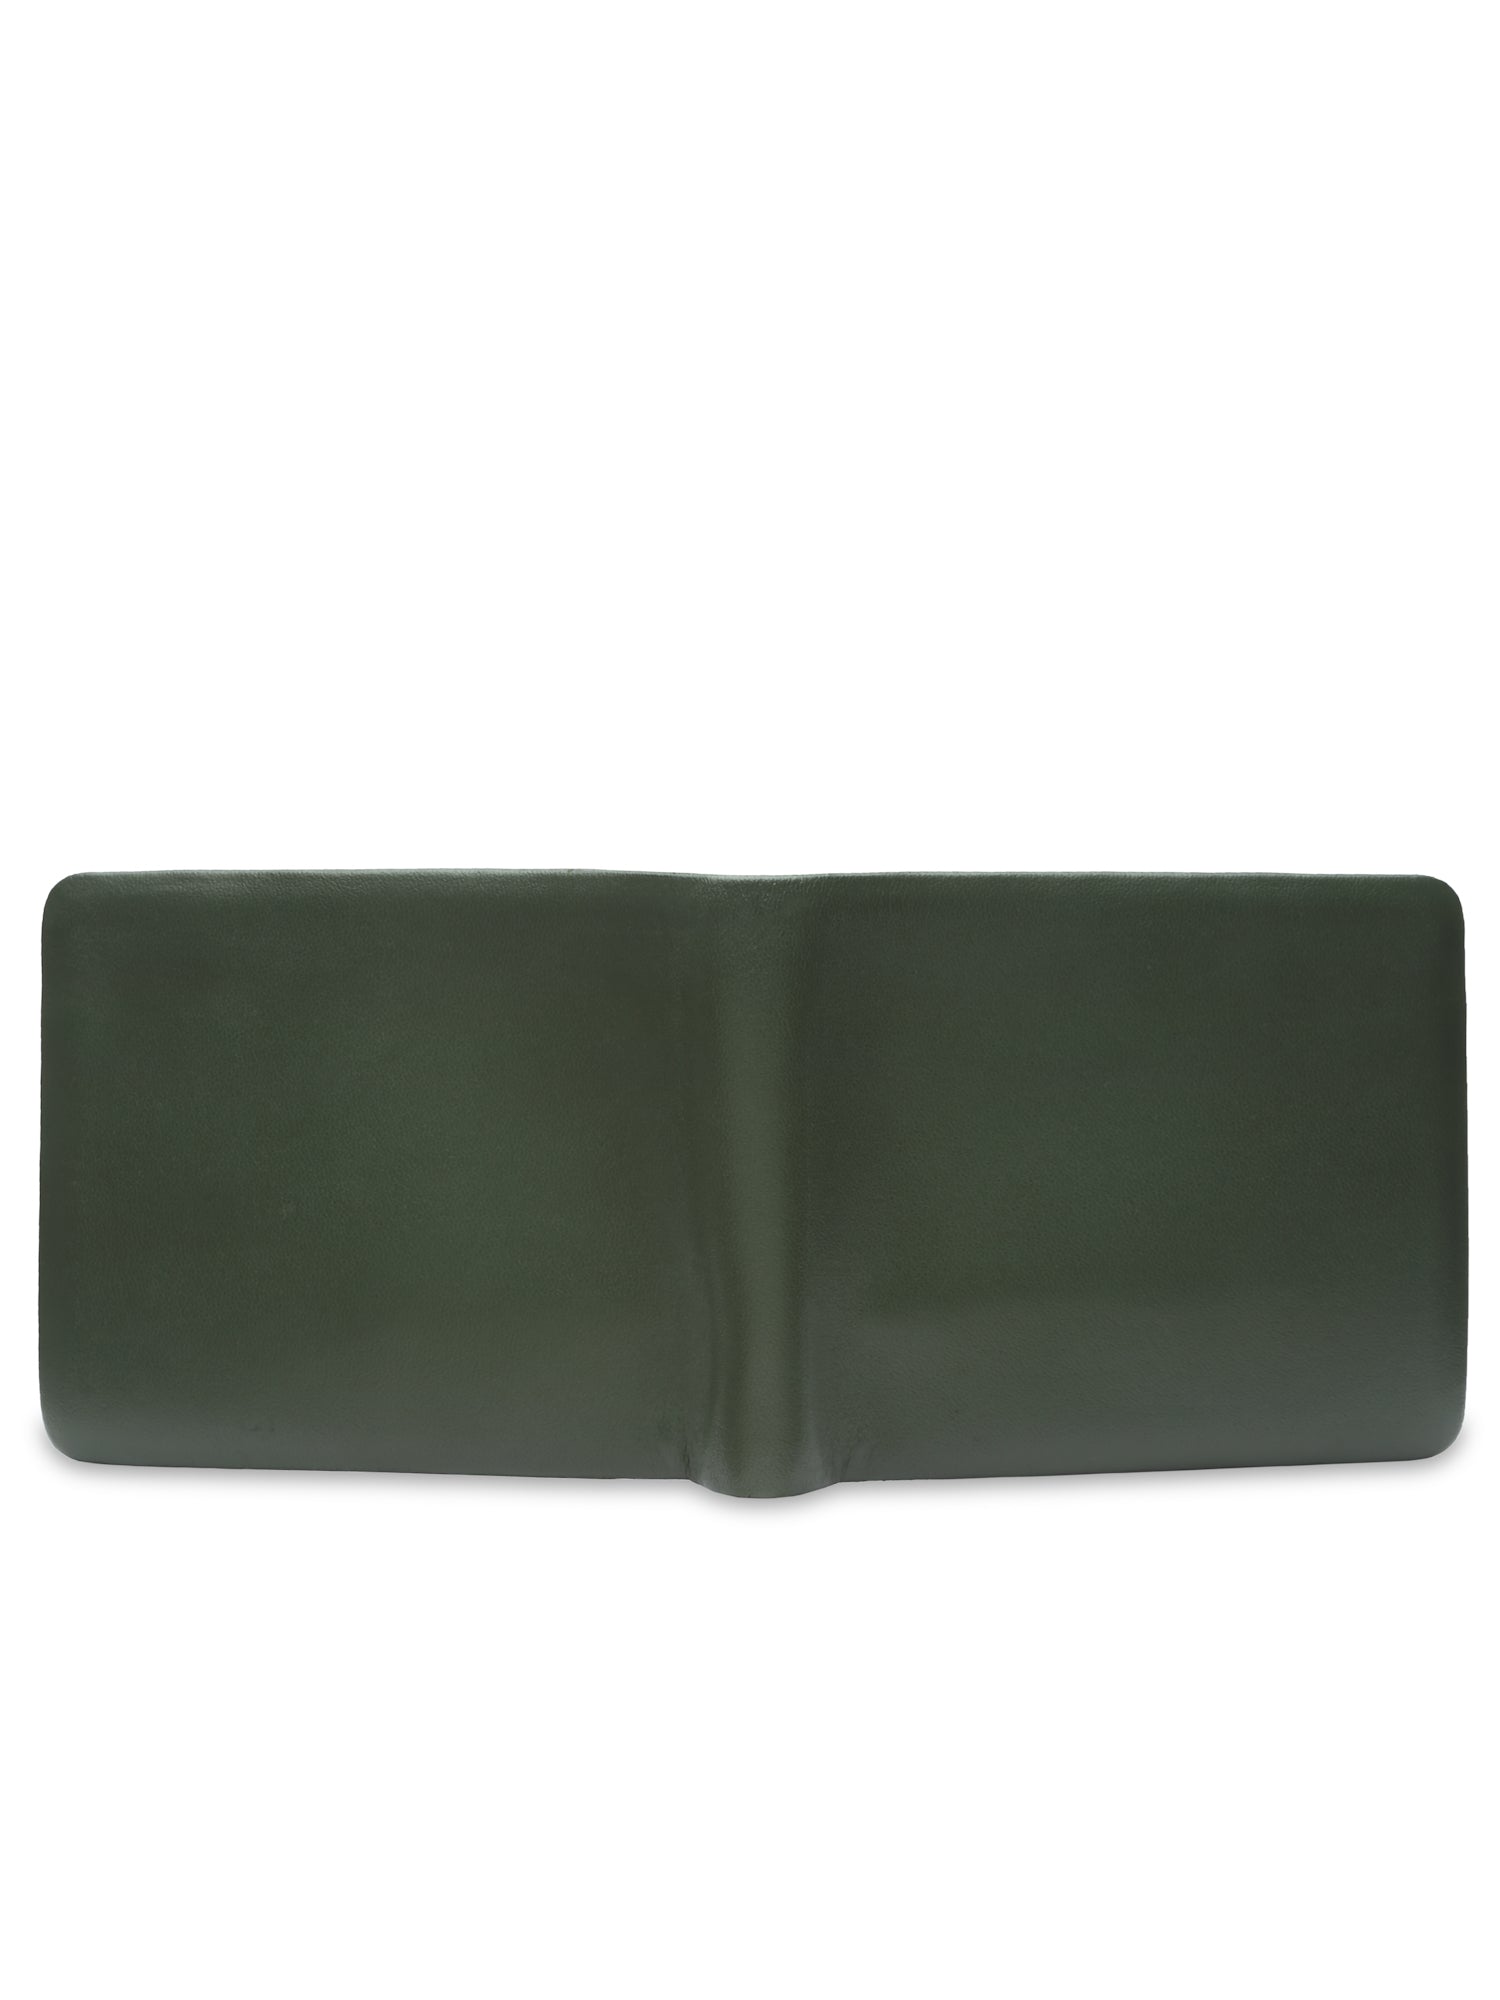 Mens Bi Fold Wallet - Olive Green